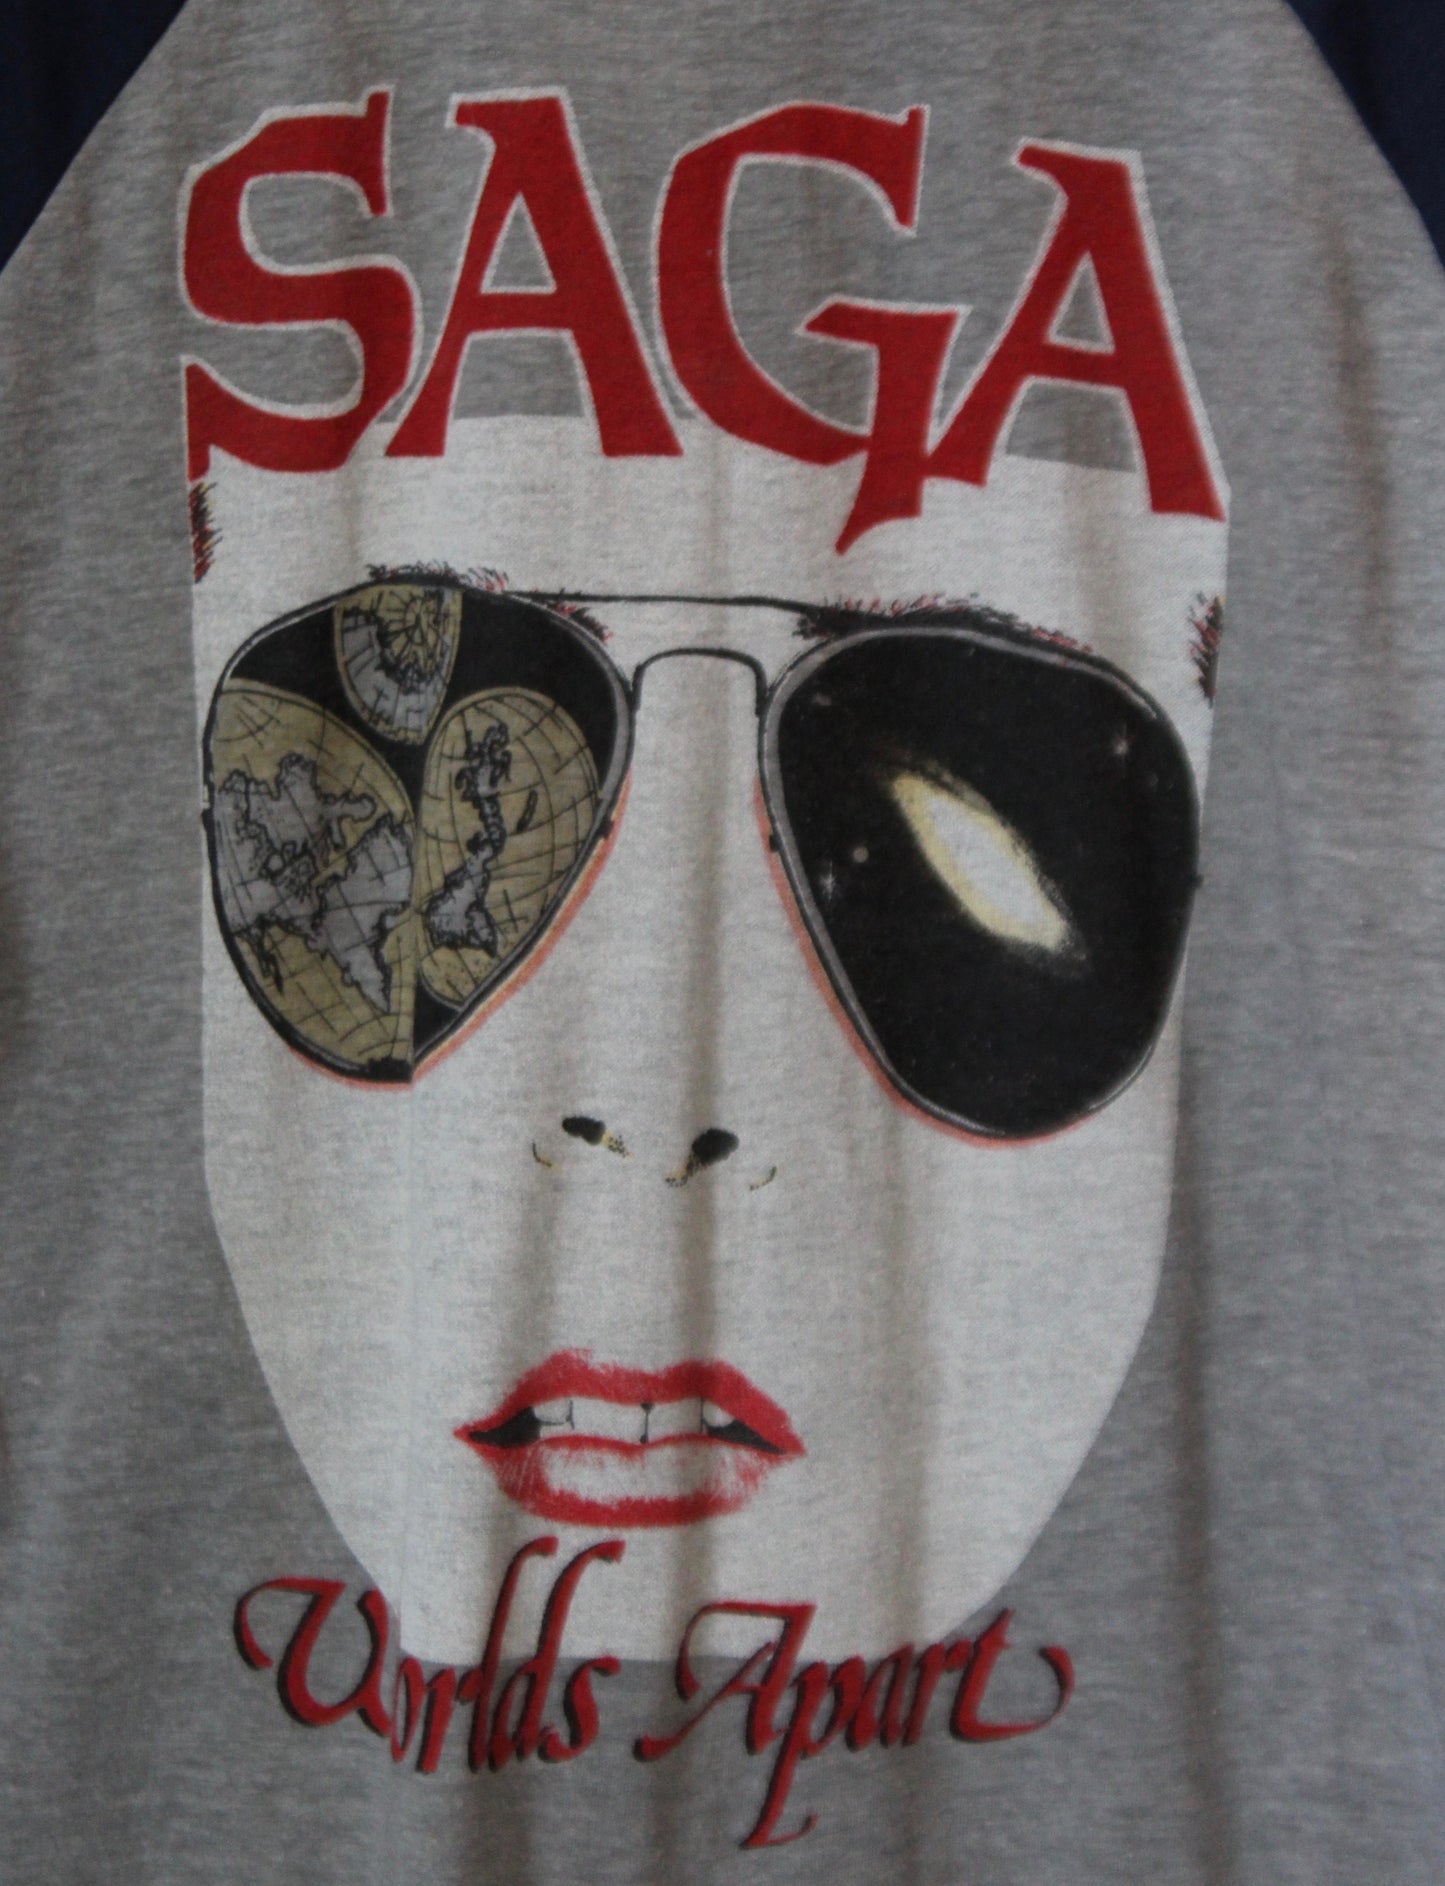 Vintage Saga Concert T Shirt World Apart Jersey Tee 1982 Large